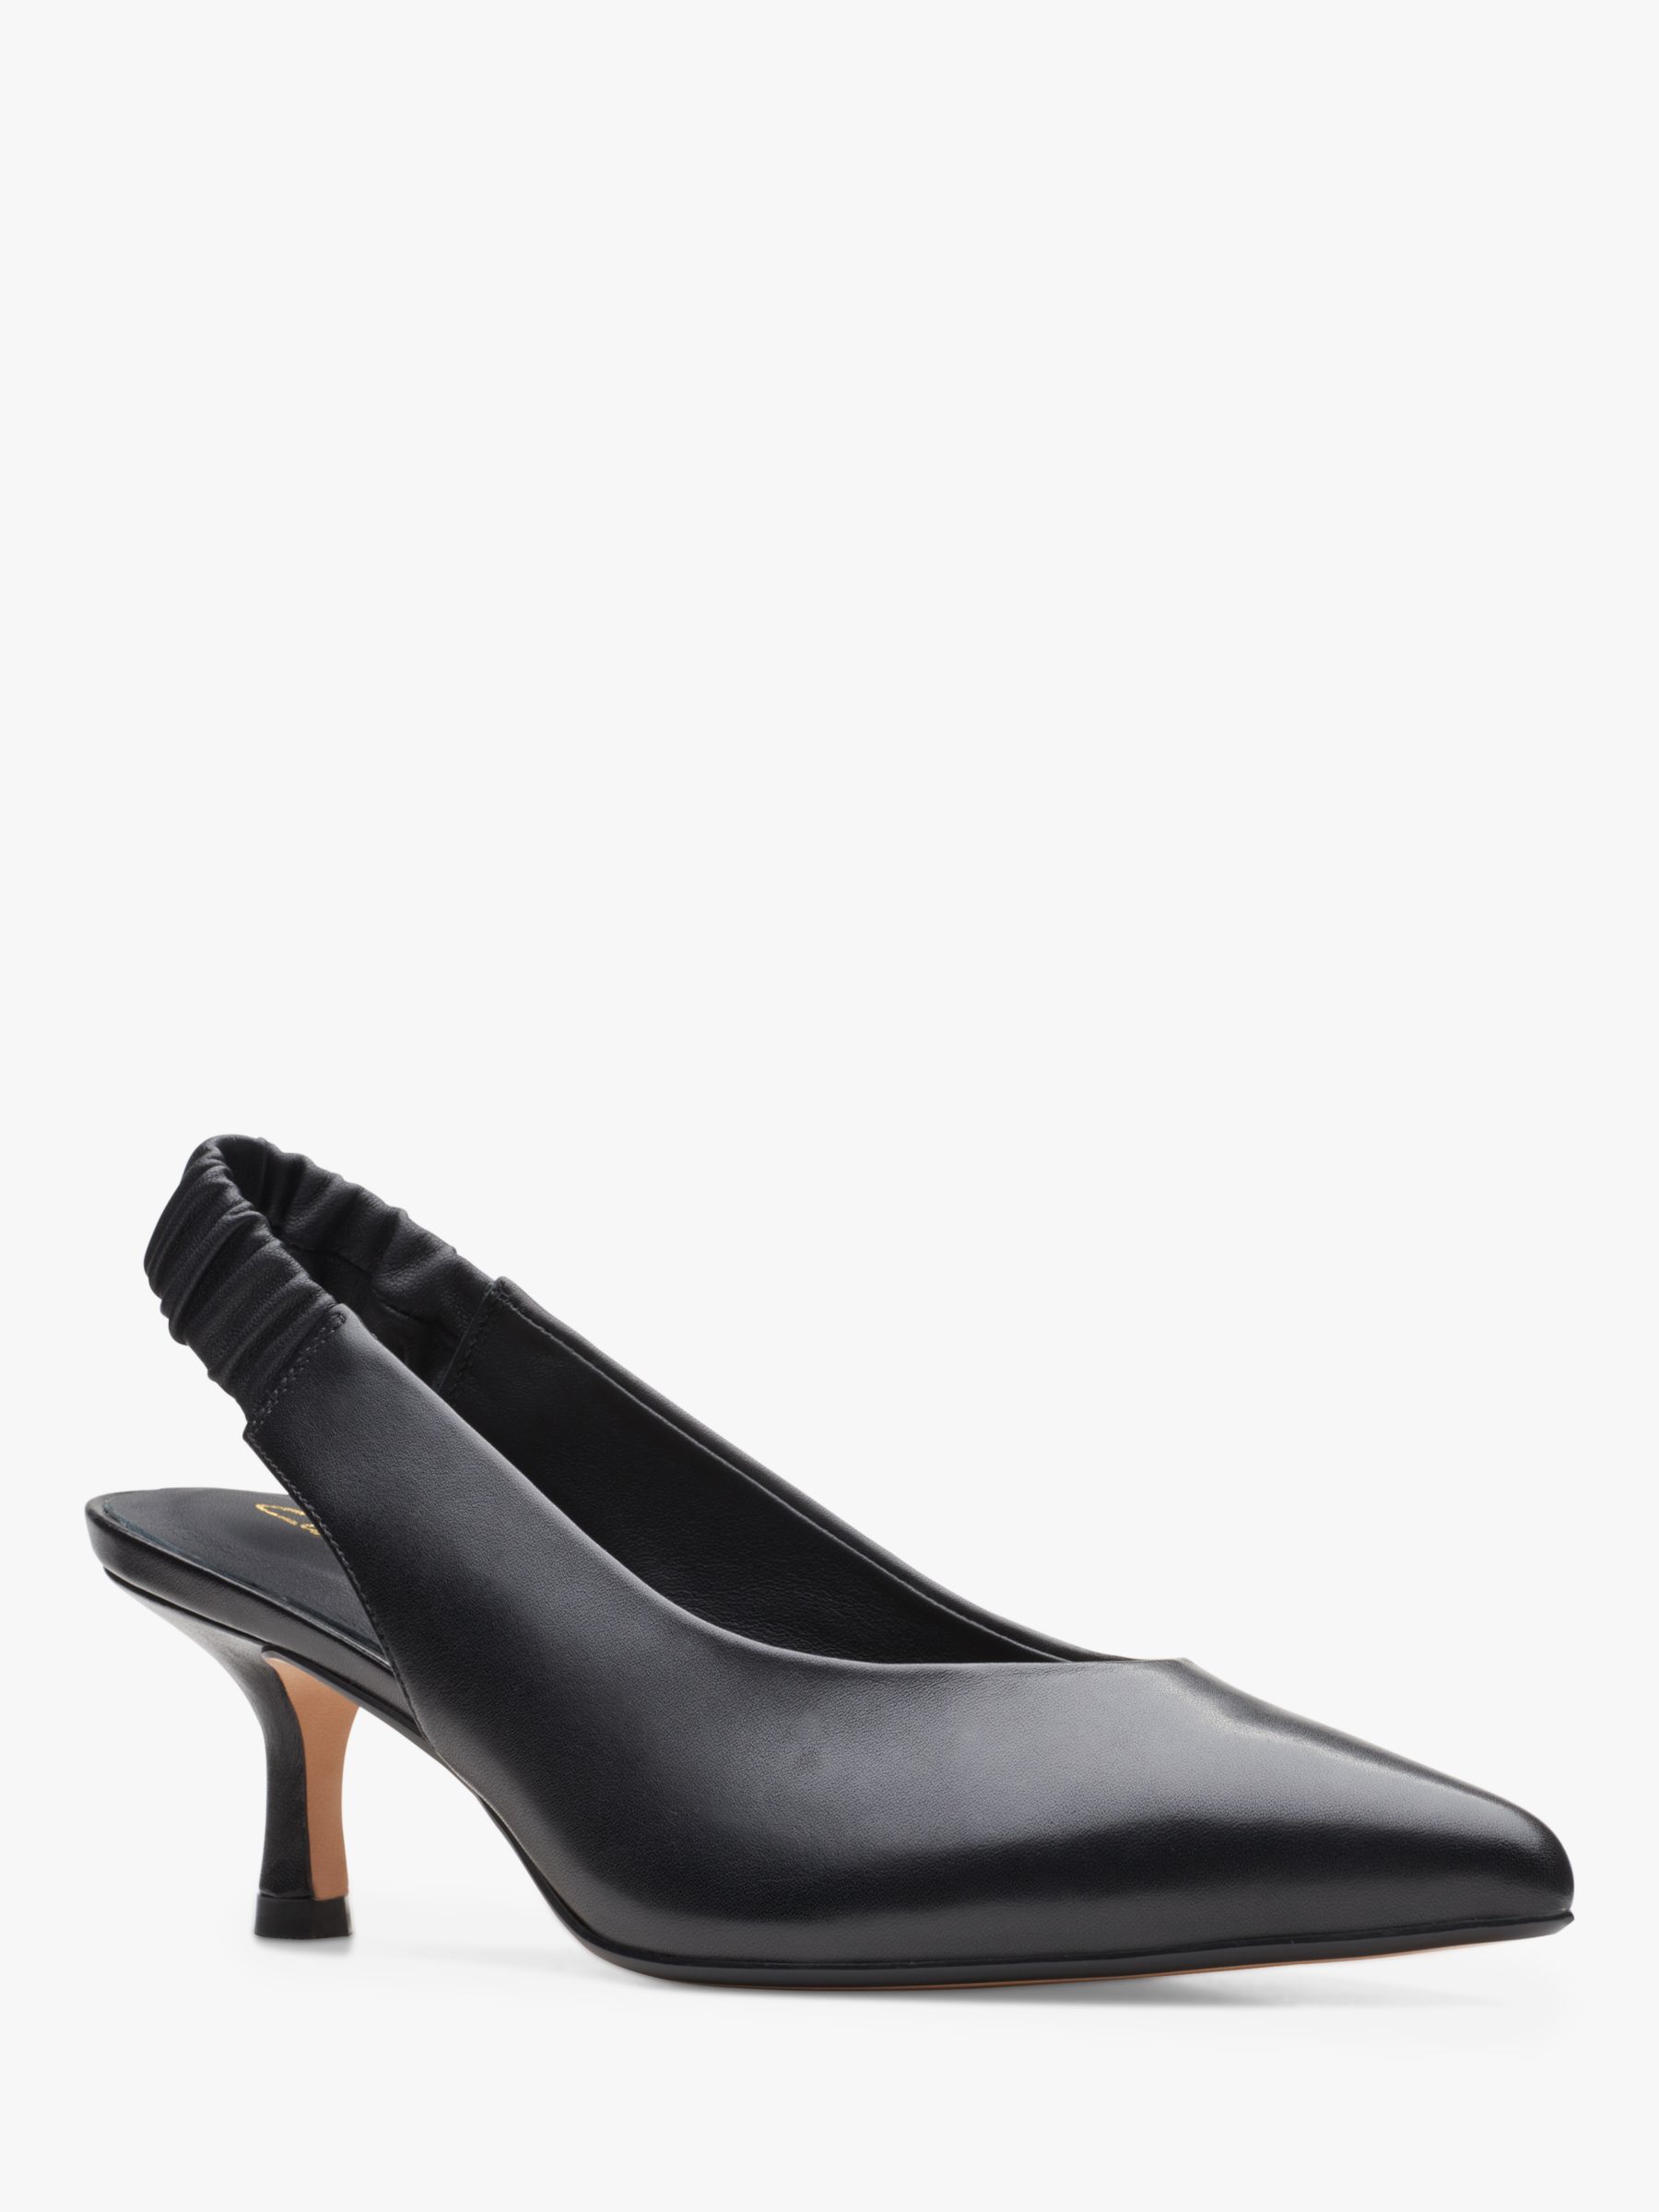 Clarks Violet55 Leather Slingback Court Shoes, Black at John Lewis ...